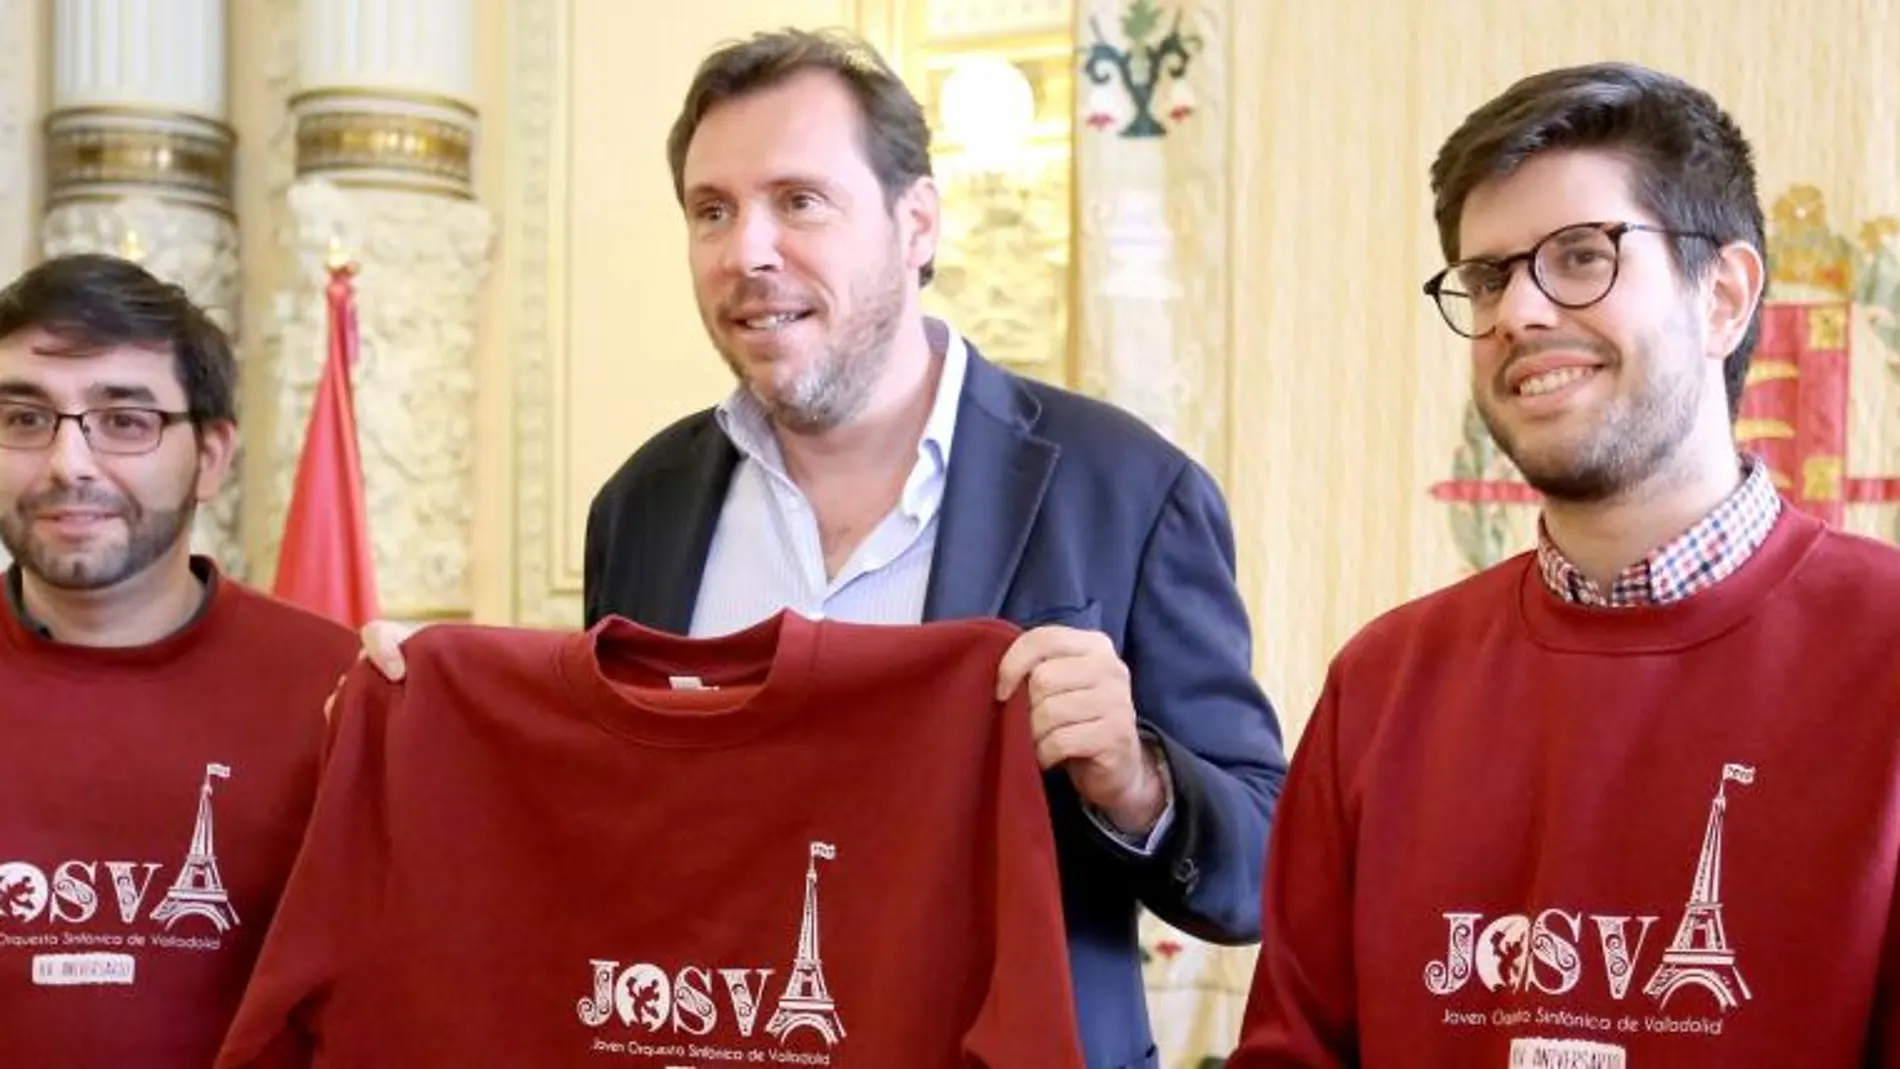 El alcalde de Valladolid, Óscar Puente, recibe a la Joven Orquesta Sinfónica de Valladolid, liderada por Ernesto Monsalve